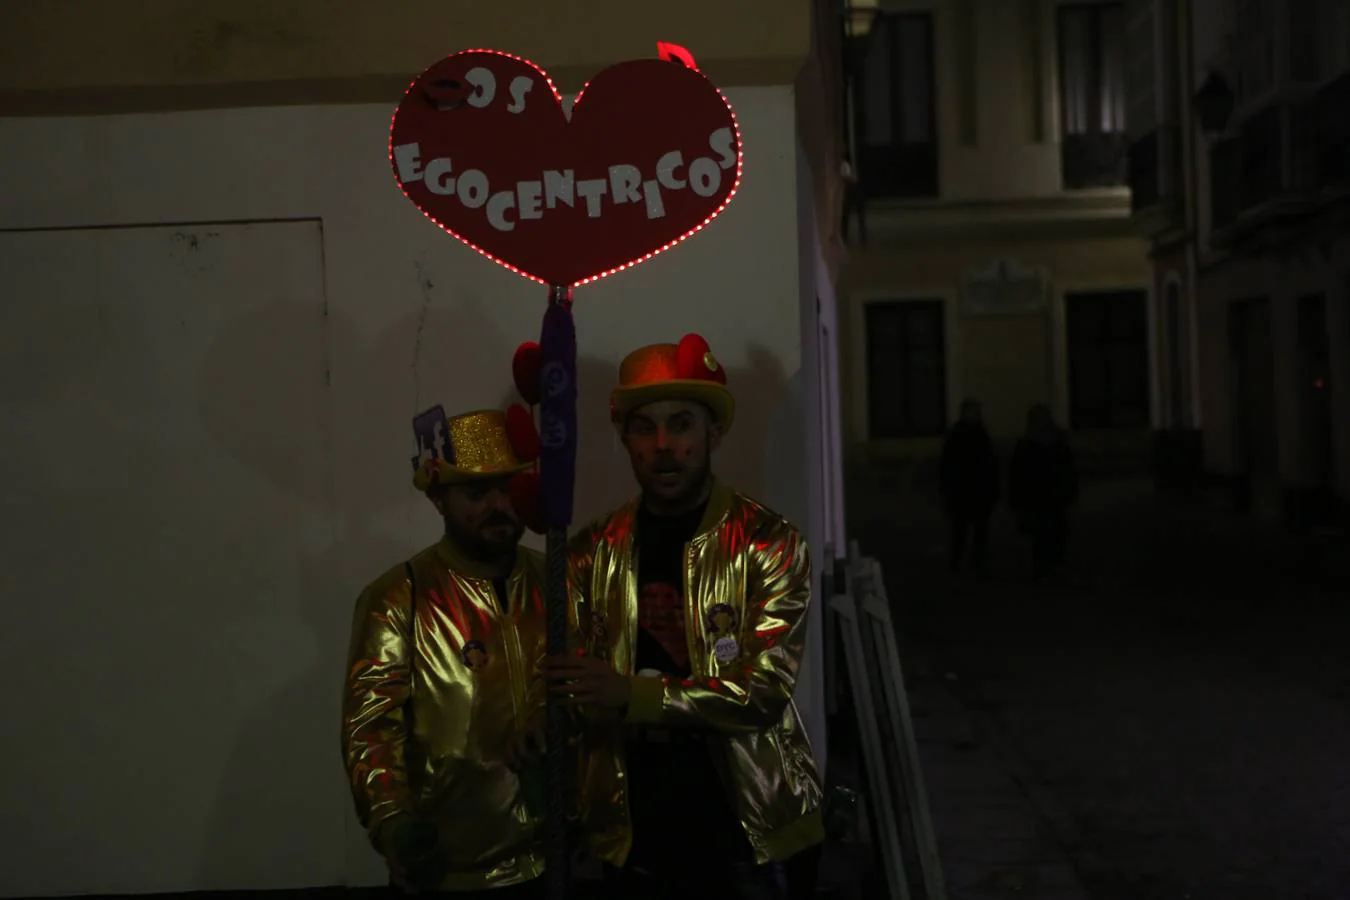 FOTOS: Ambiente en El Pópulo en el Carnaval del Cádiz 2018